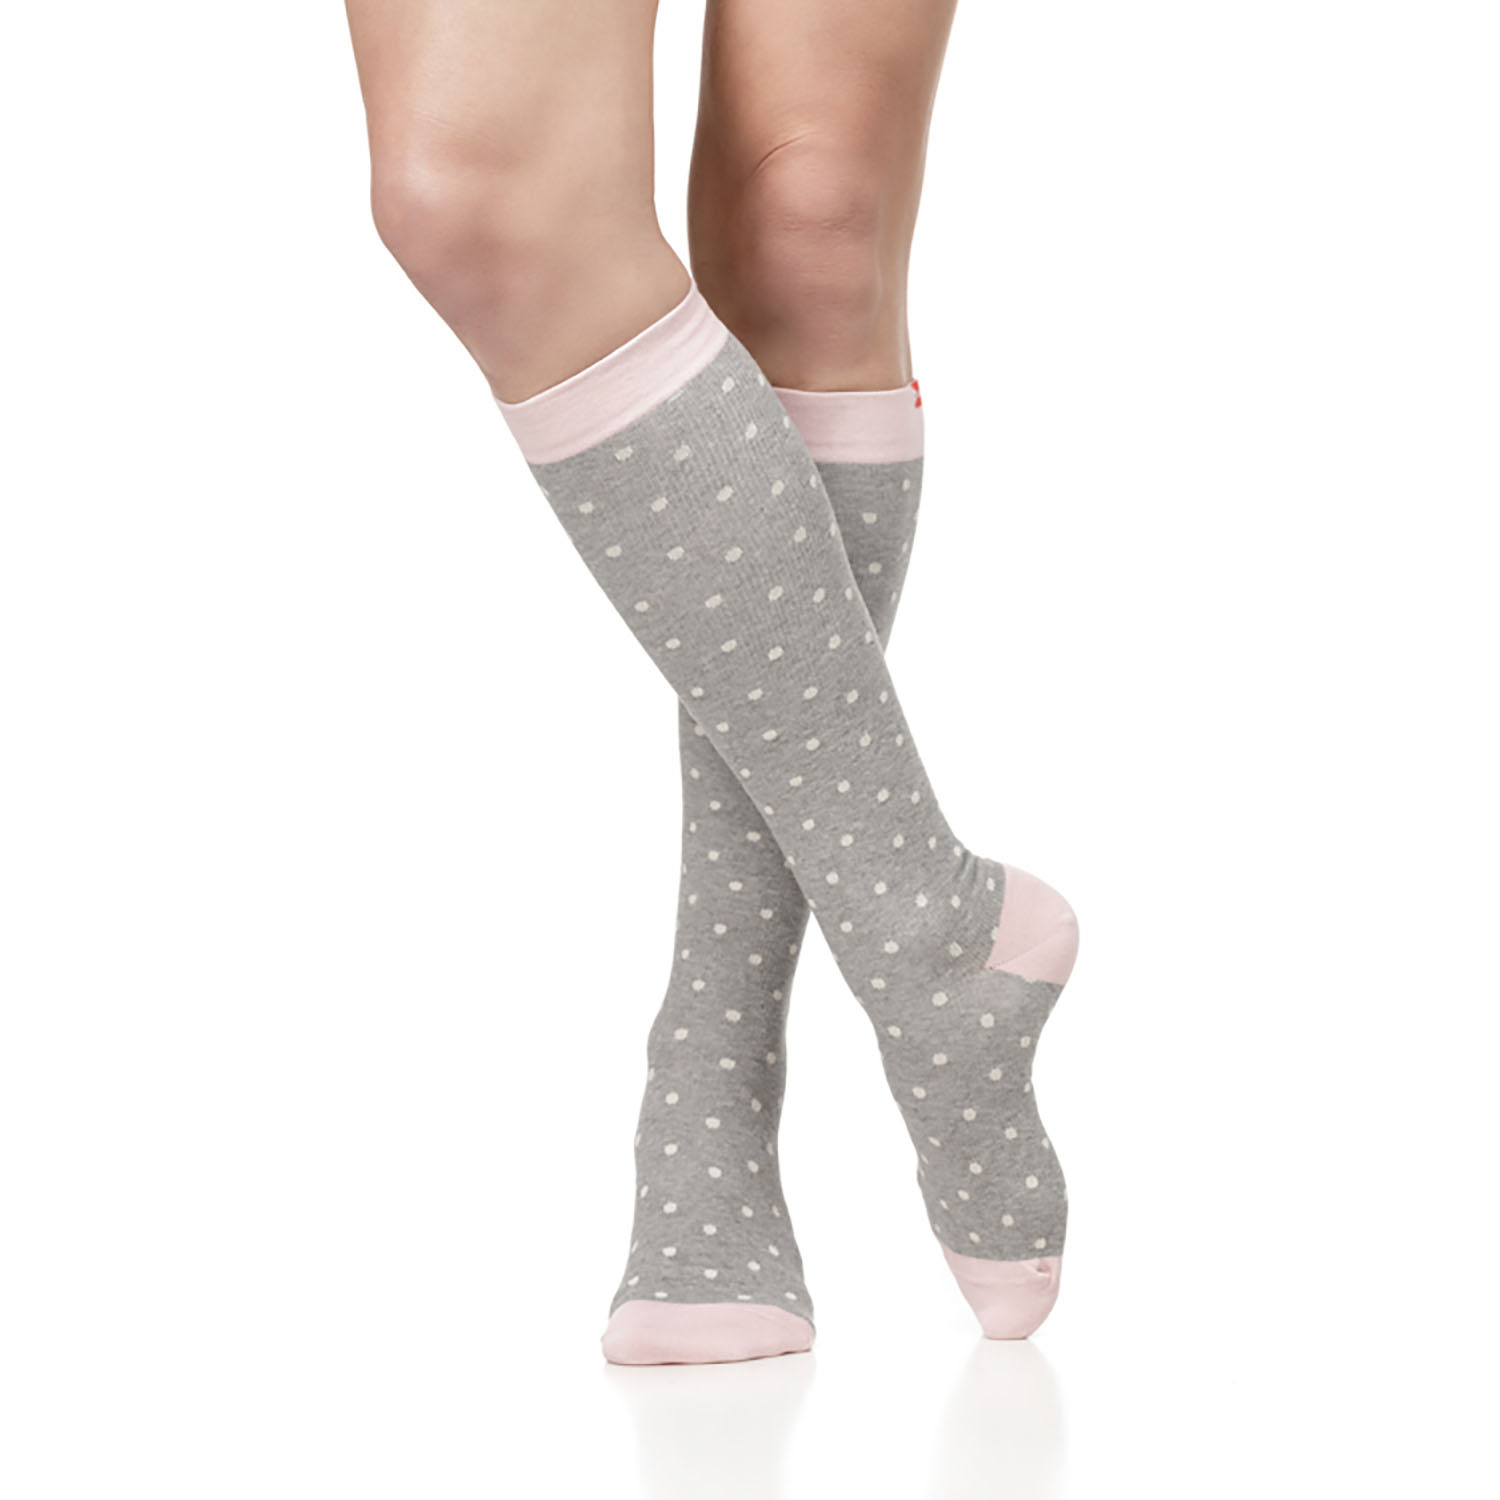 plus size compression socks for edema